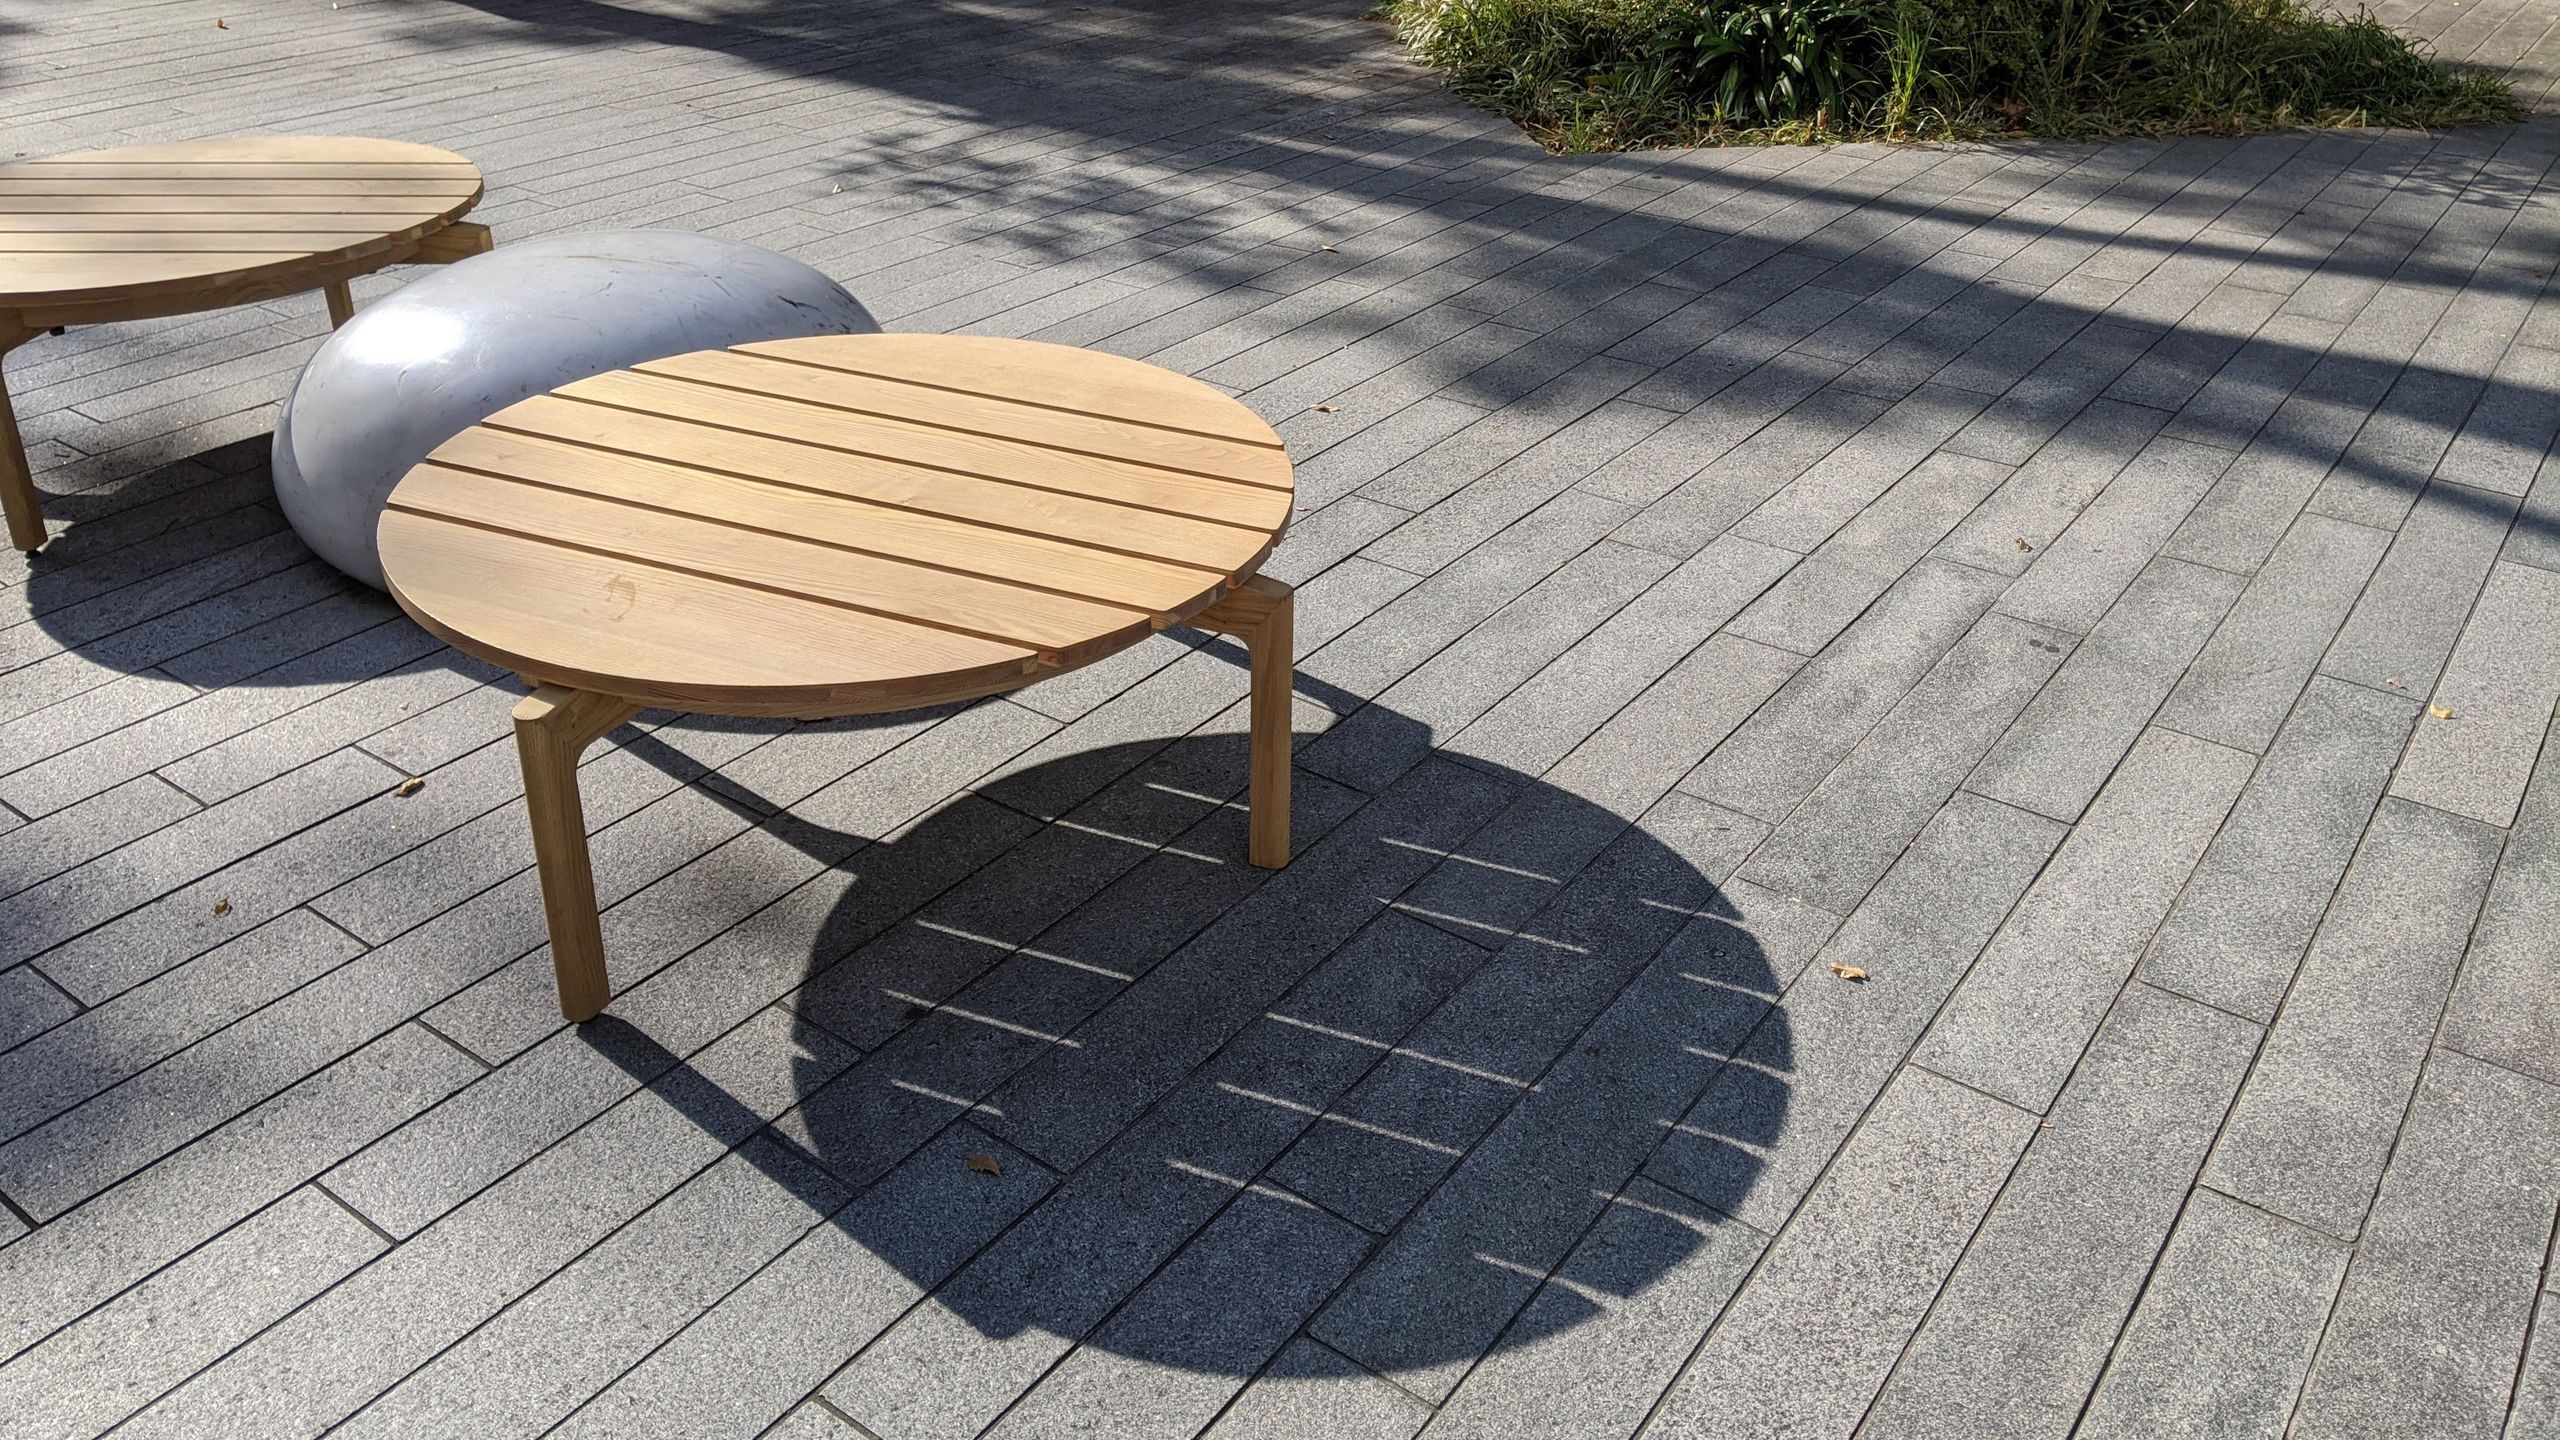 長い木の板を円形になるようつなげ、丸い木の脚がついているテーブル兼ベンチ。